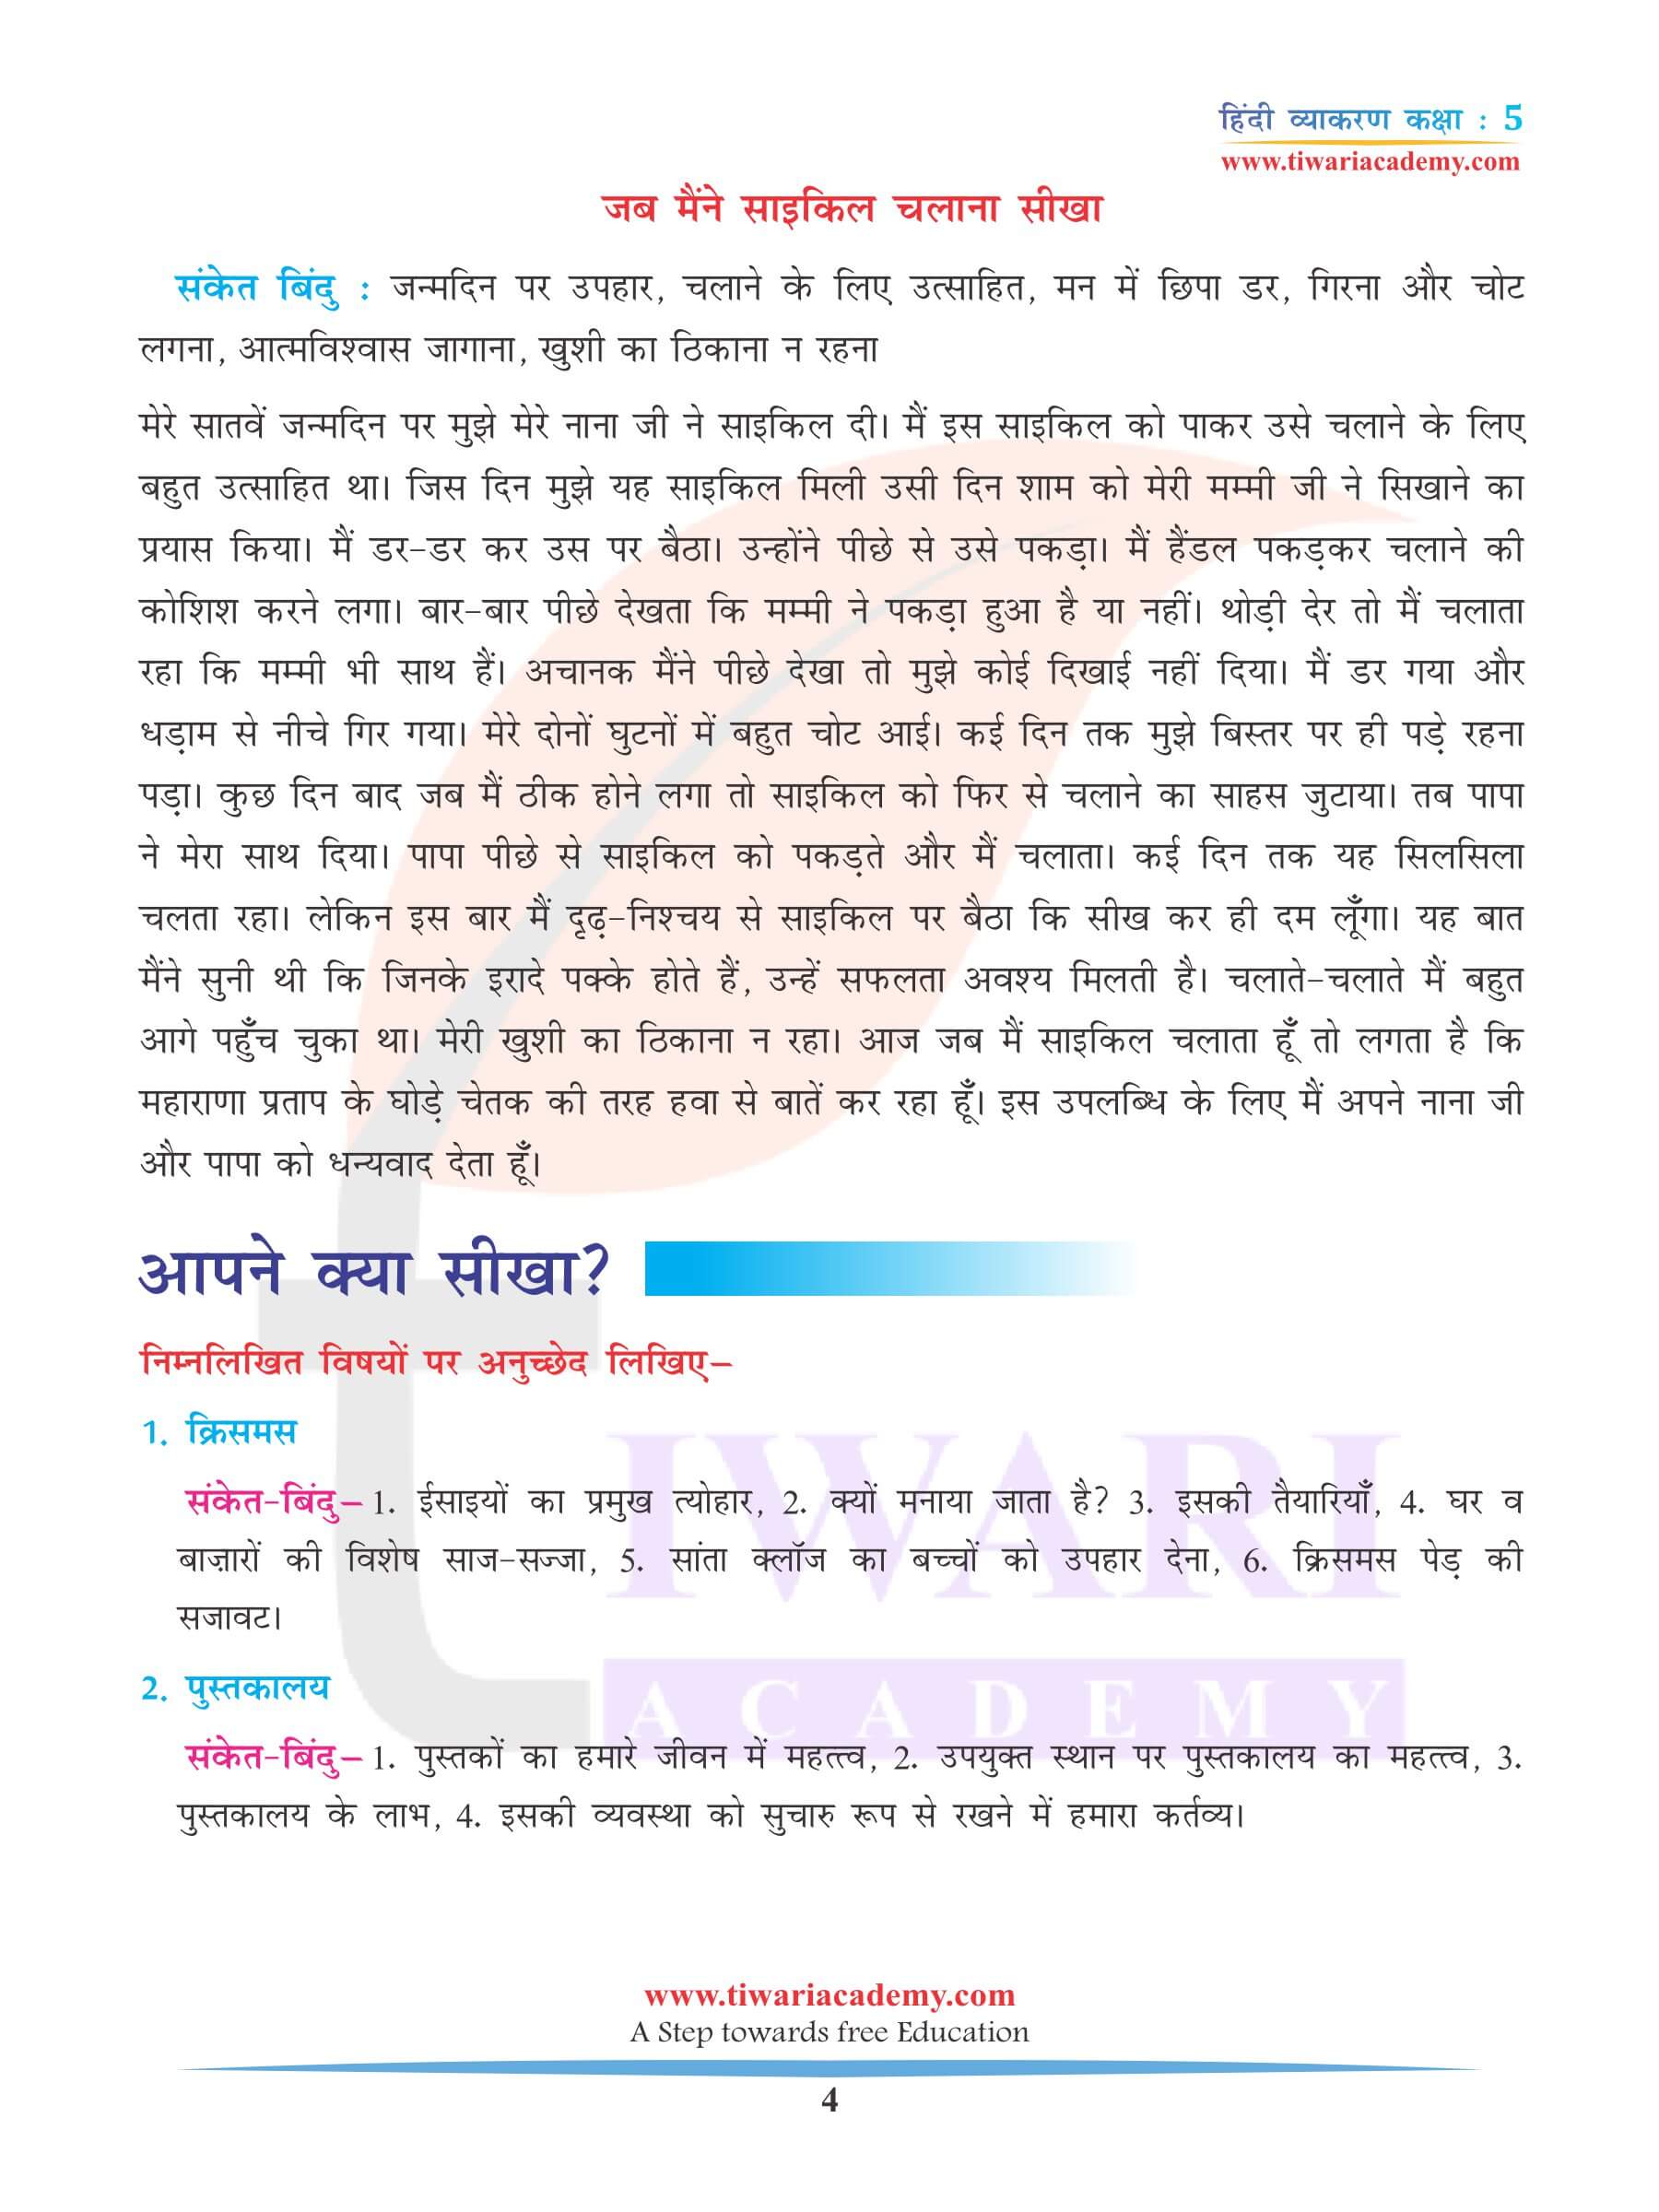 कक्षा 5 हिंदी व्याकरण अध्याय 21 अनुच्छेद लेखन के लिए अभ्यास